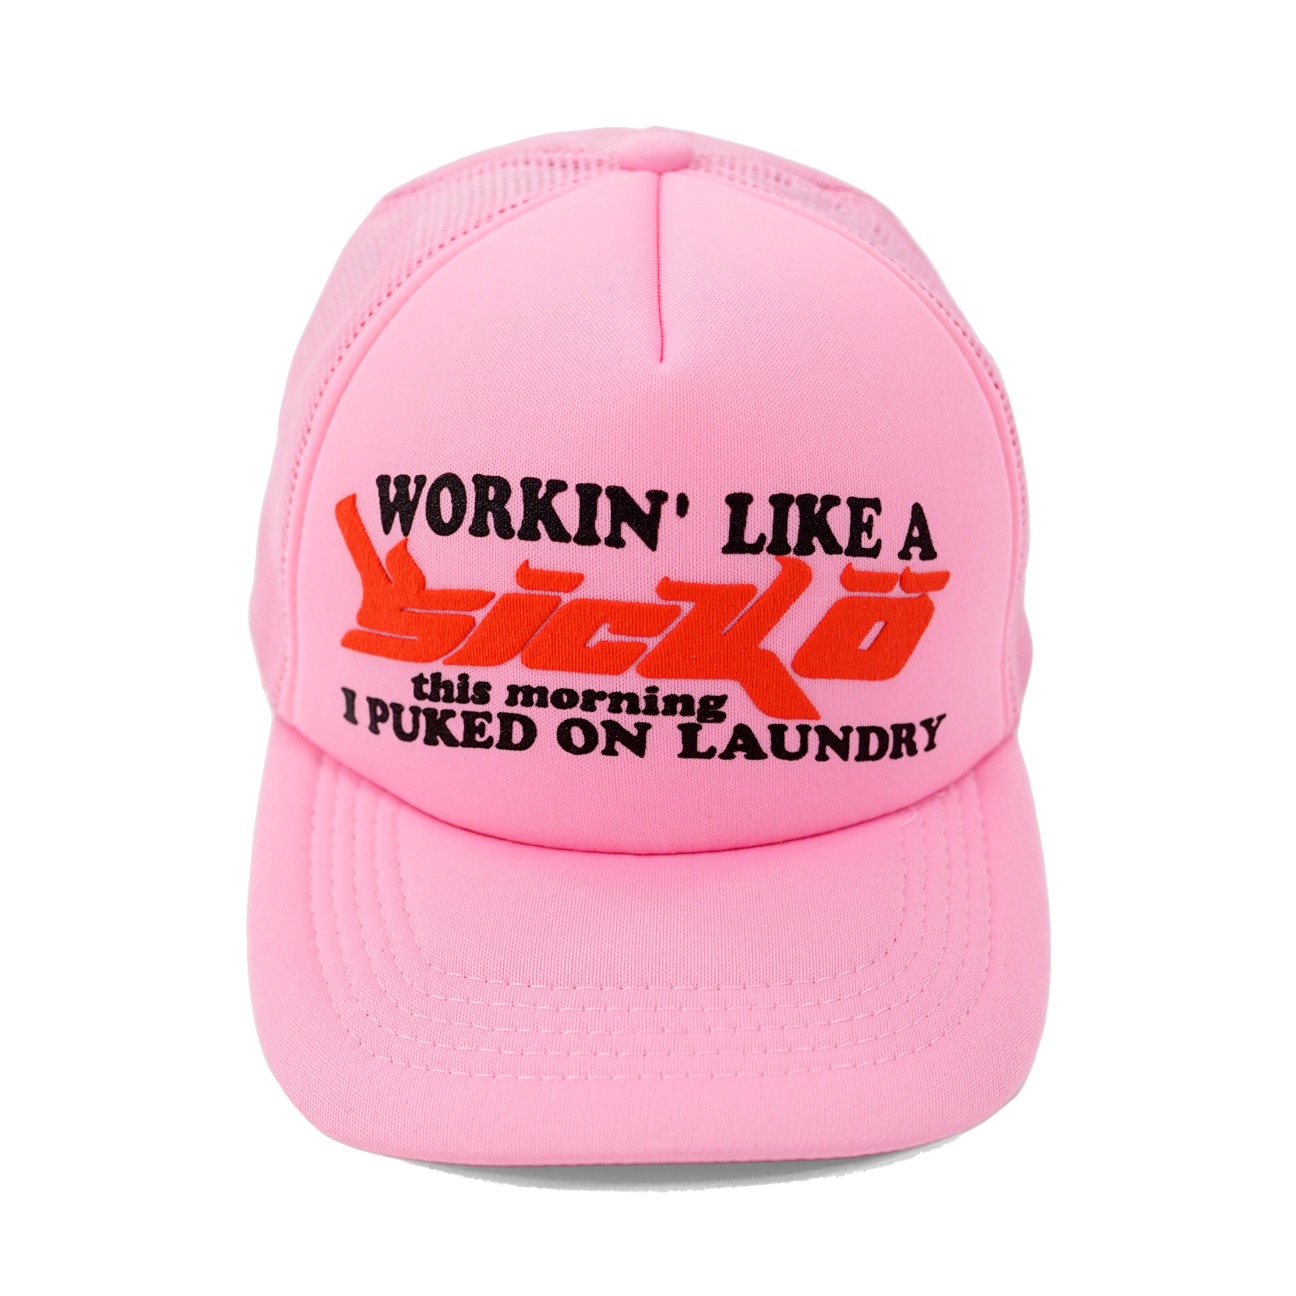 Sicko Laundry Trucker Hat Pink - FW21 - JP